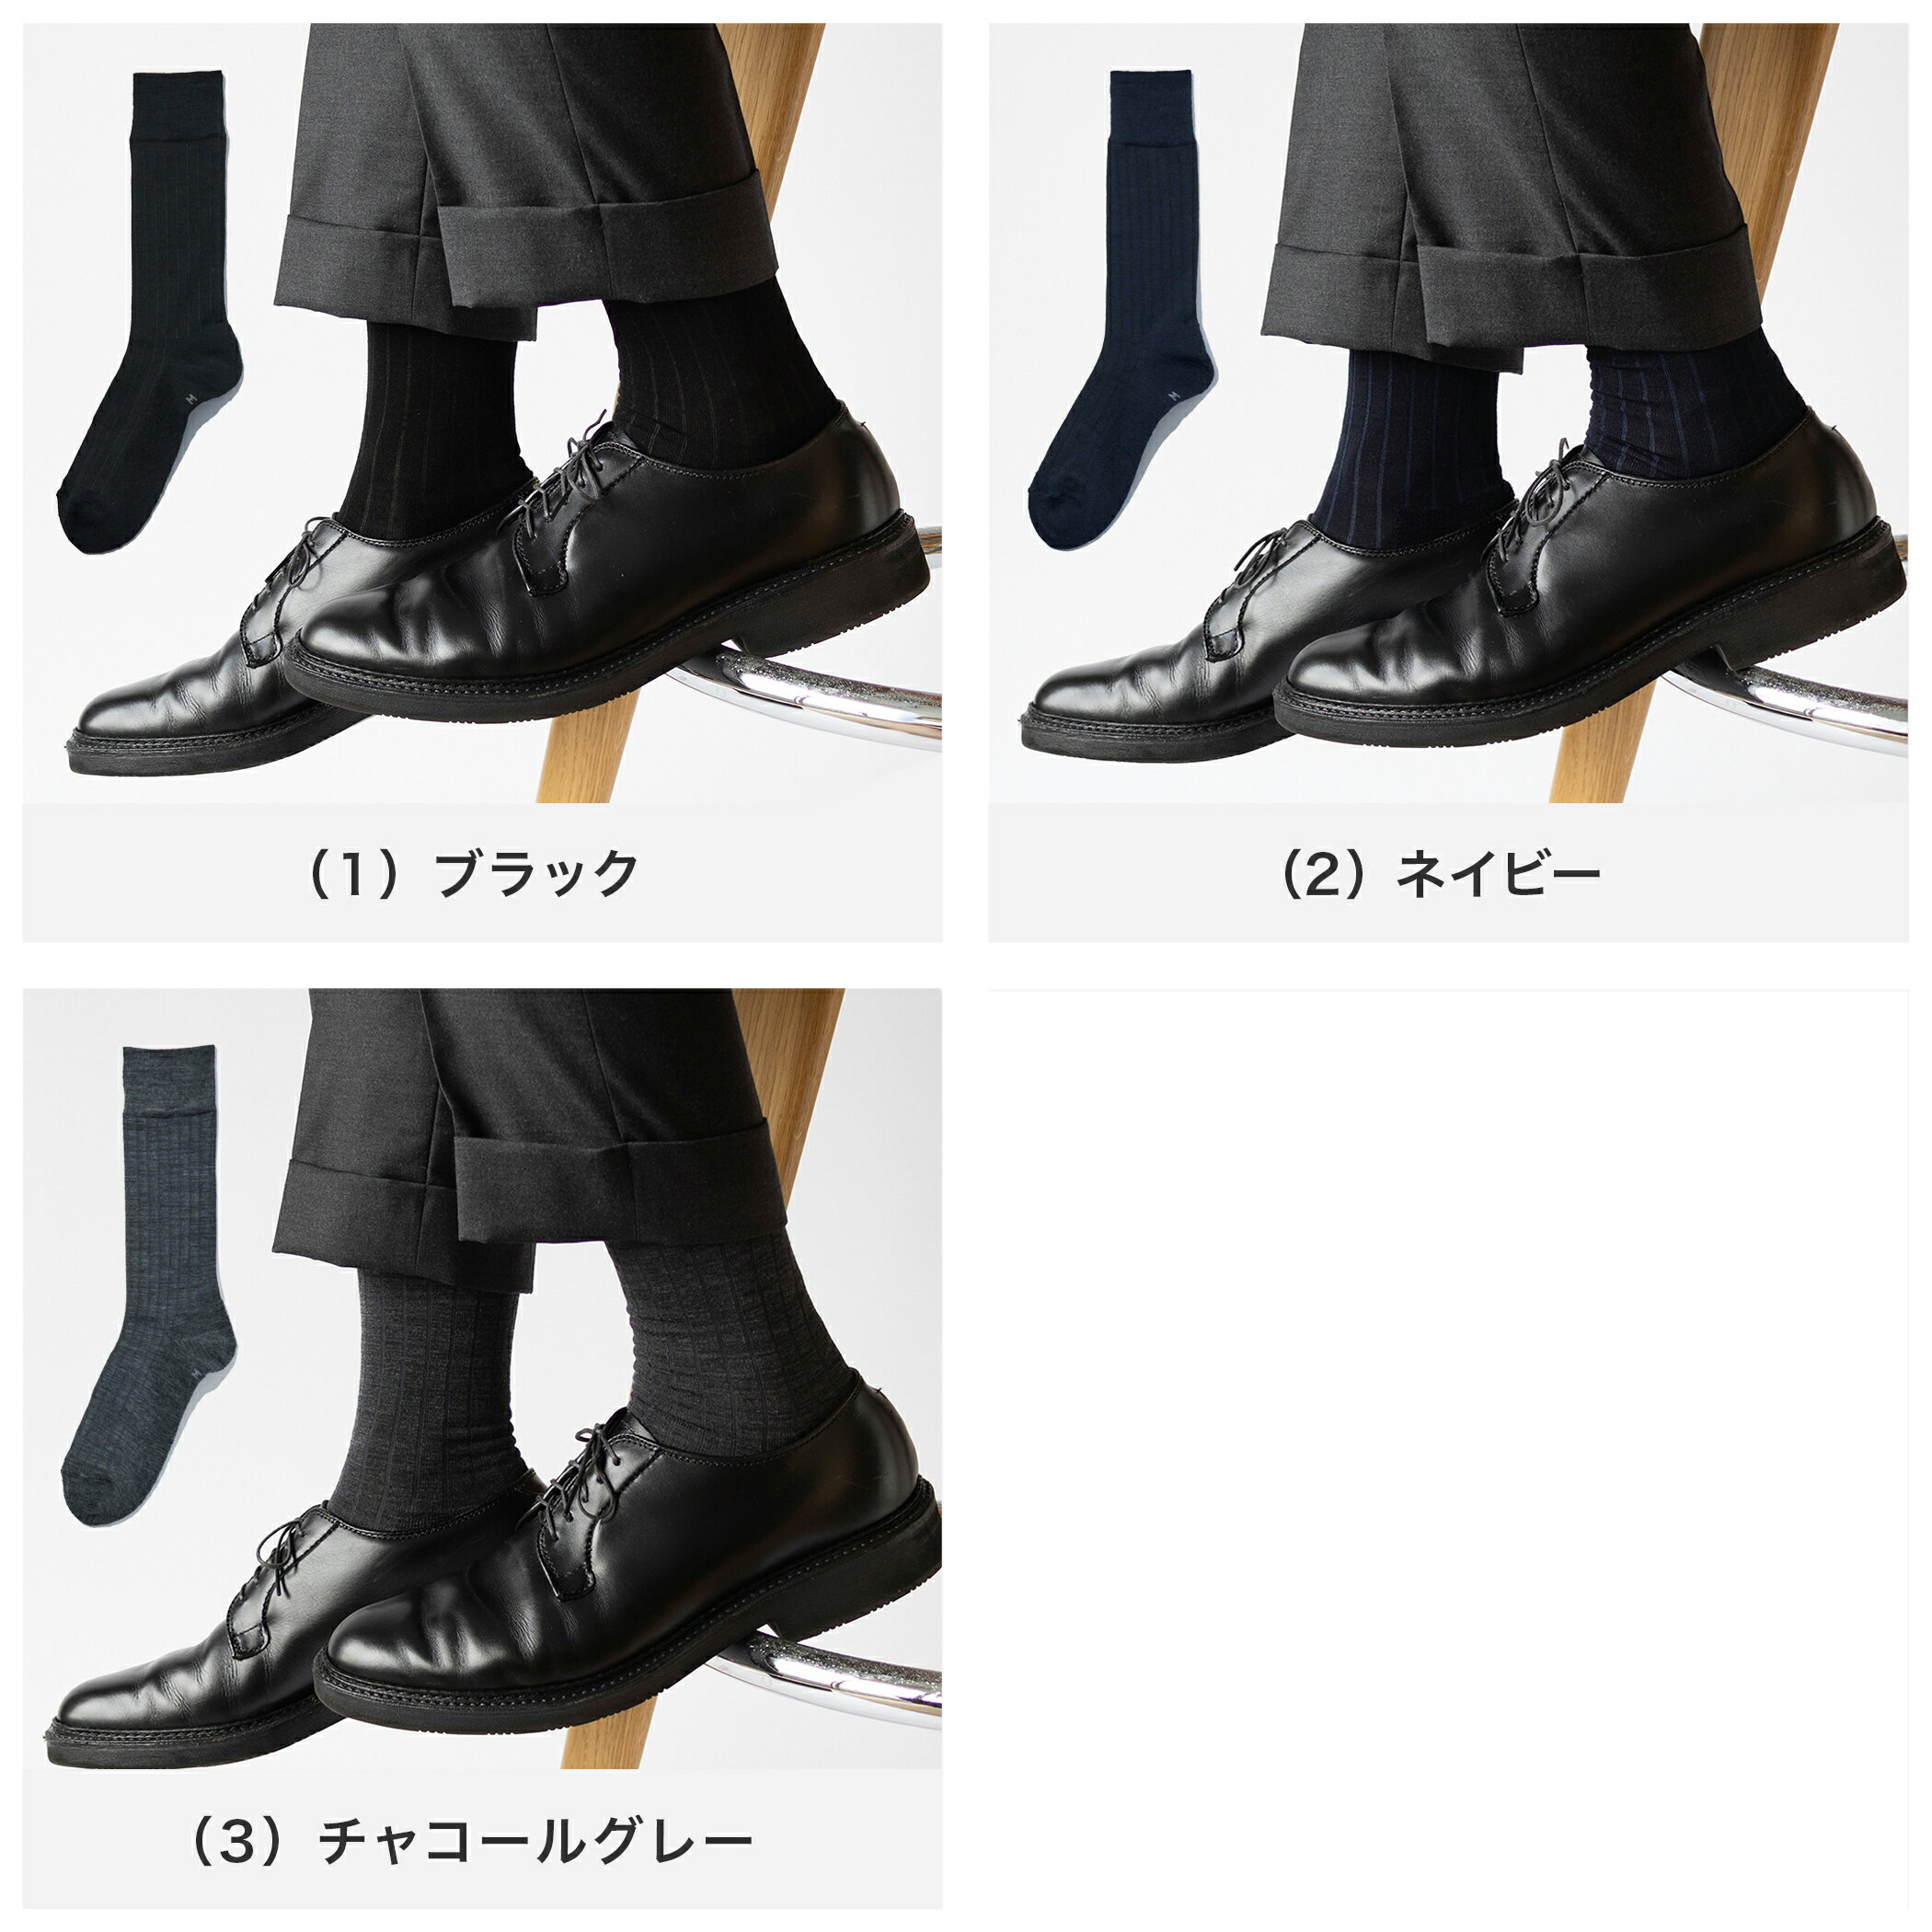 【奈良で編む日本製靴下】ソックス 靴下 メンズ...の紹介画像2